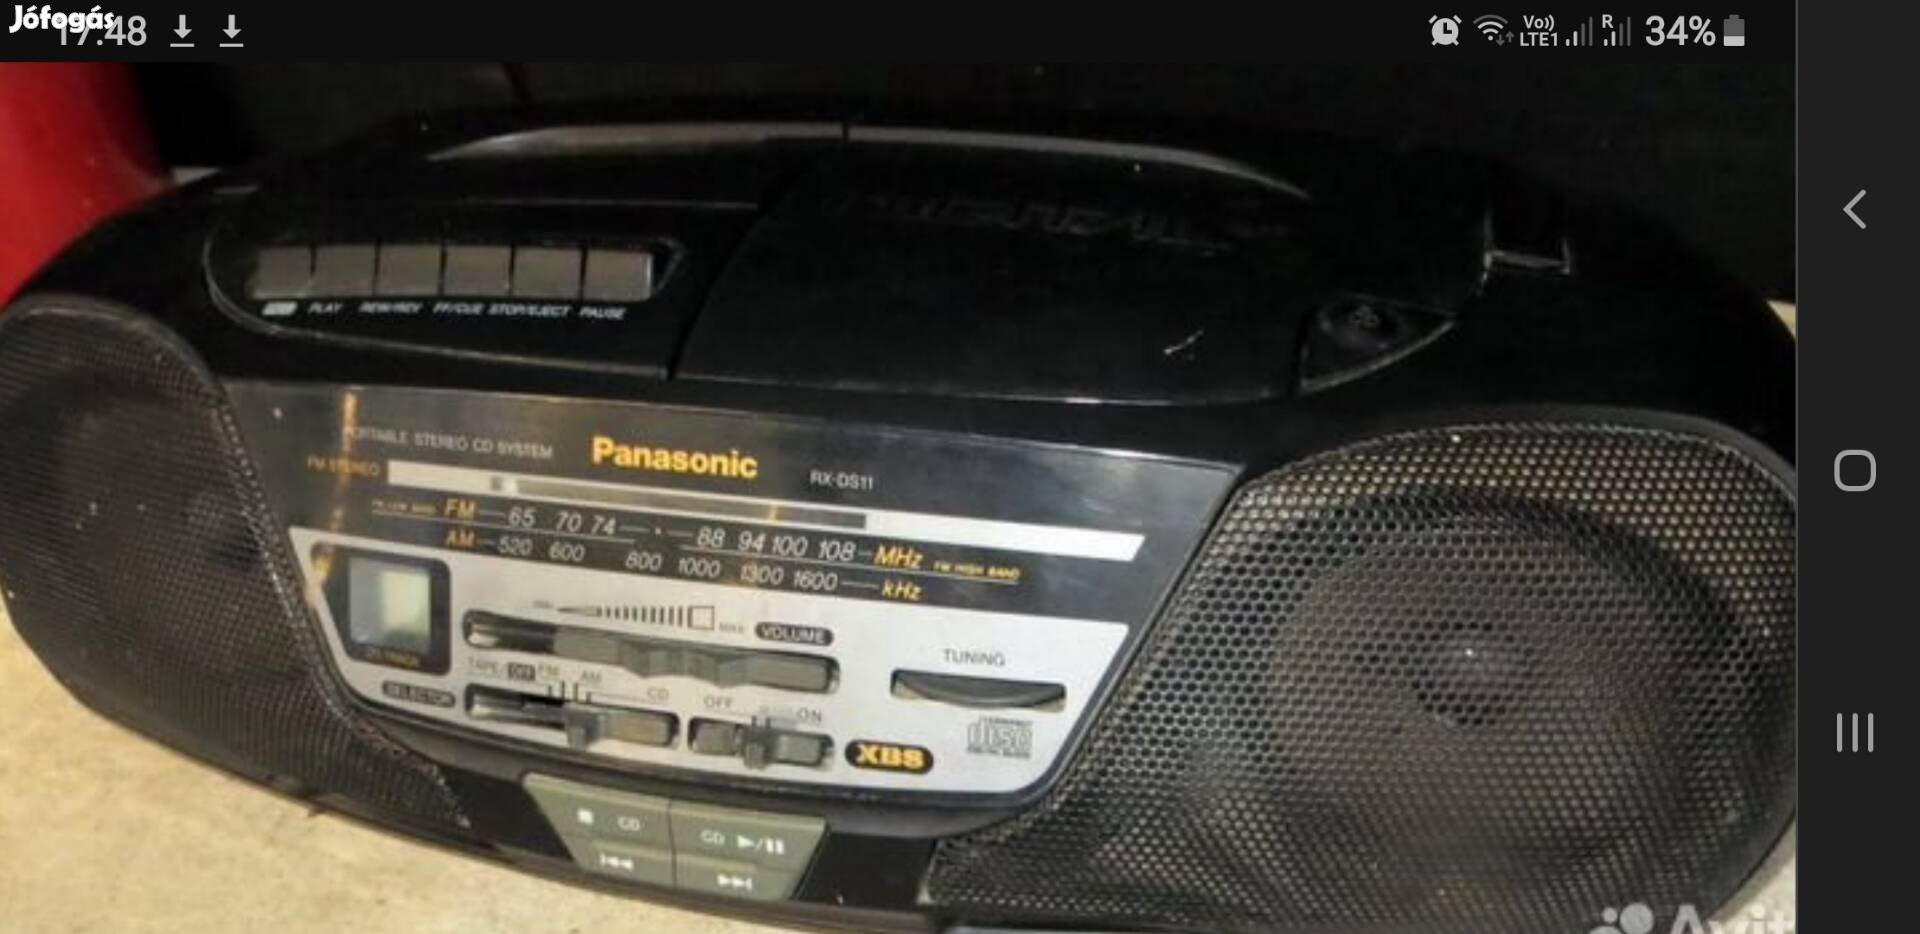 Eladó Panasonic RX-DS11 rádiósmagnó boombox